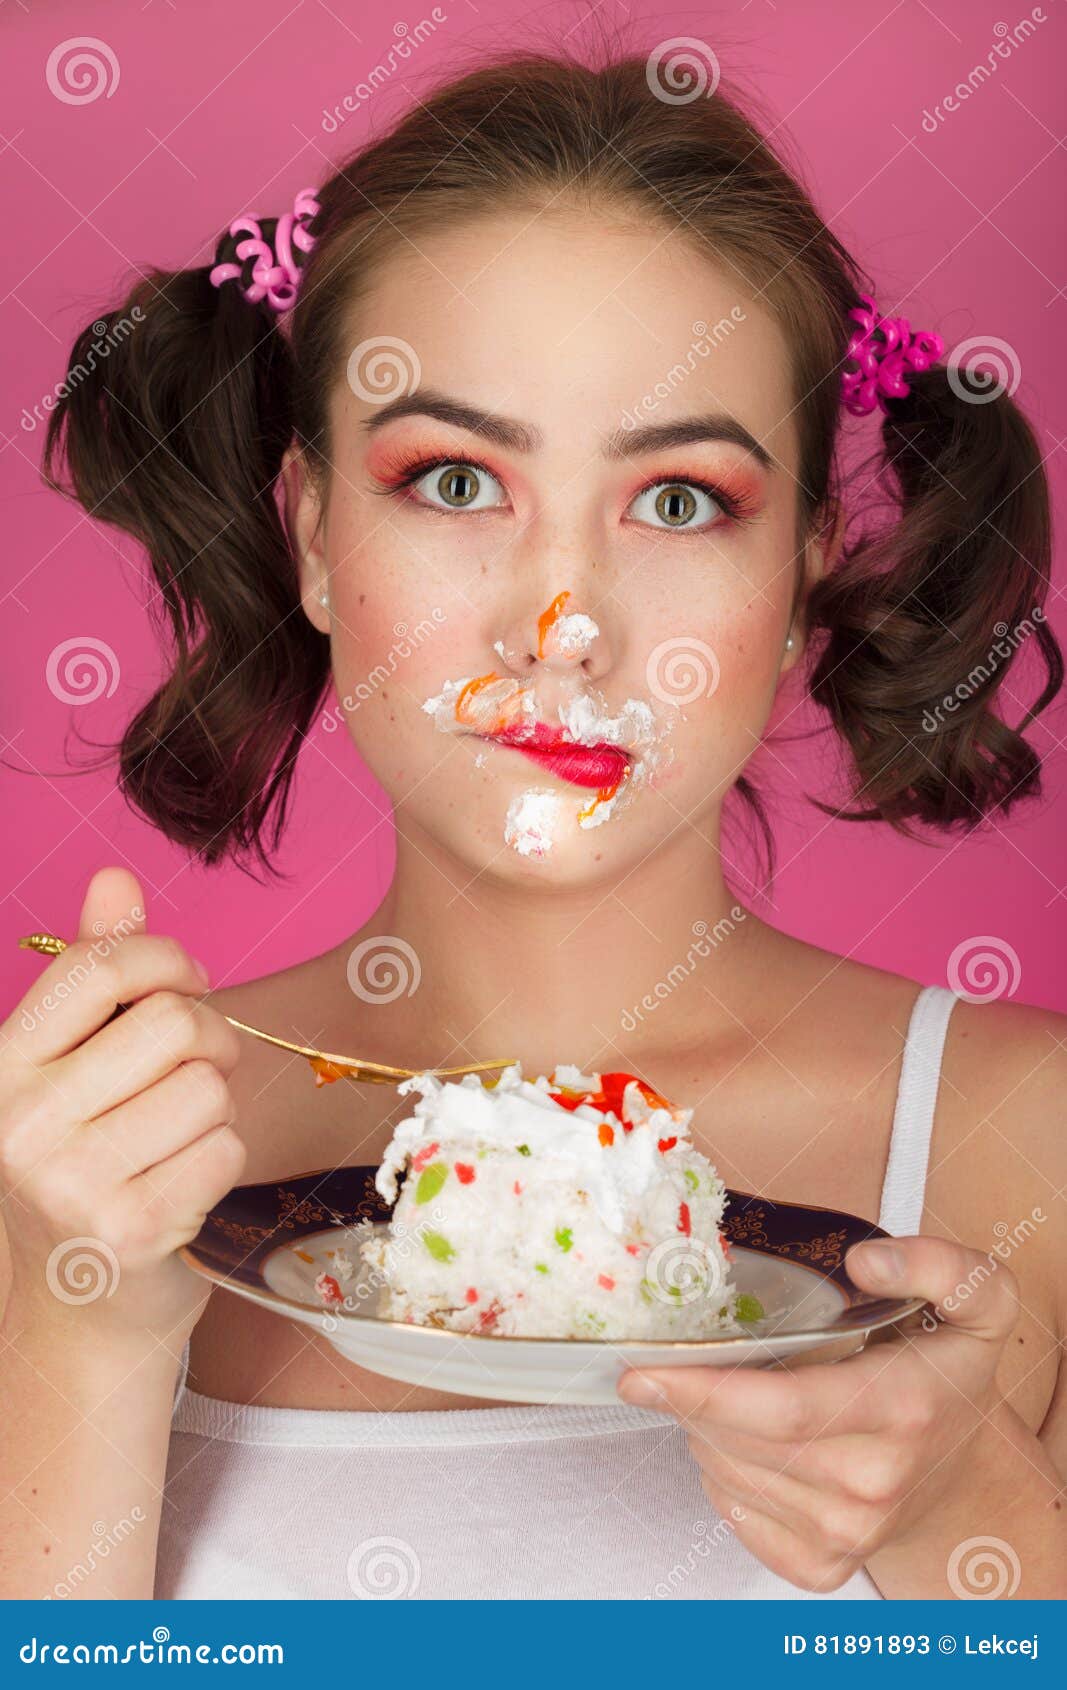 Девушка лицом в торт штырь. Торт для девушки. Девушка с пирожным. Девушка со сладостями. Фотосессия с тортом.